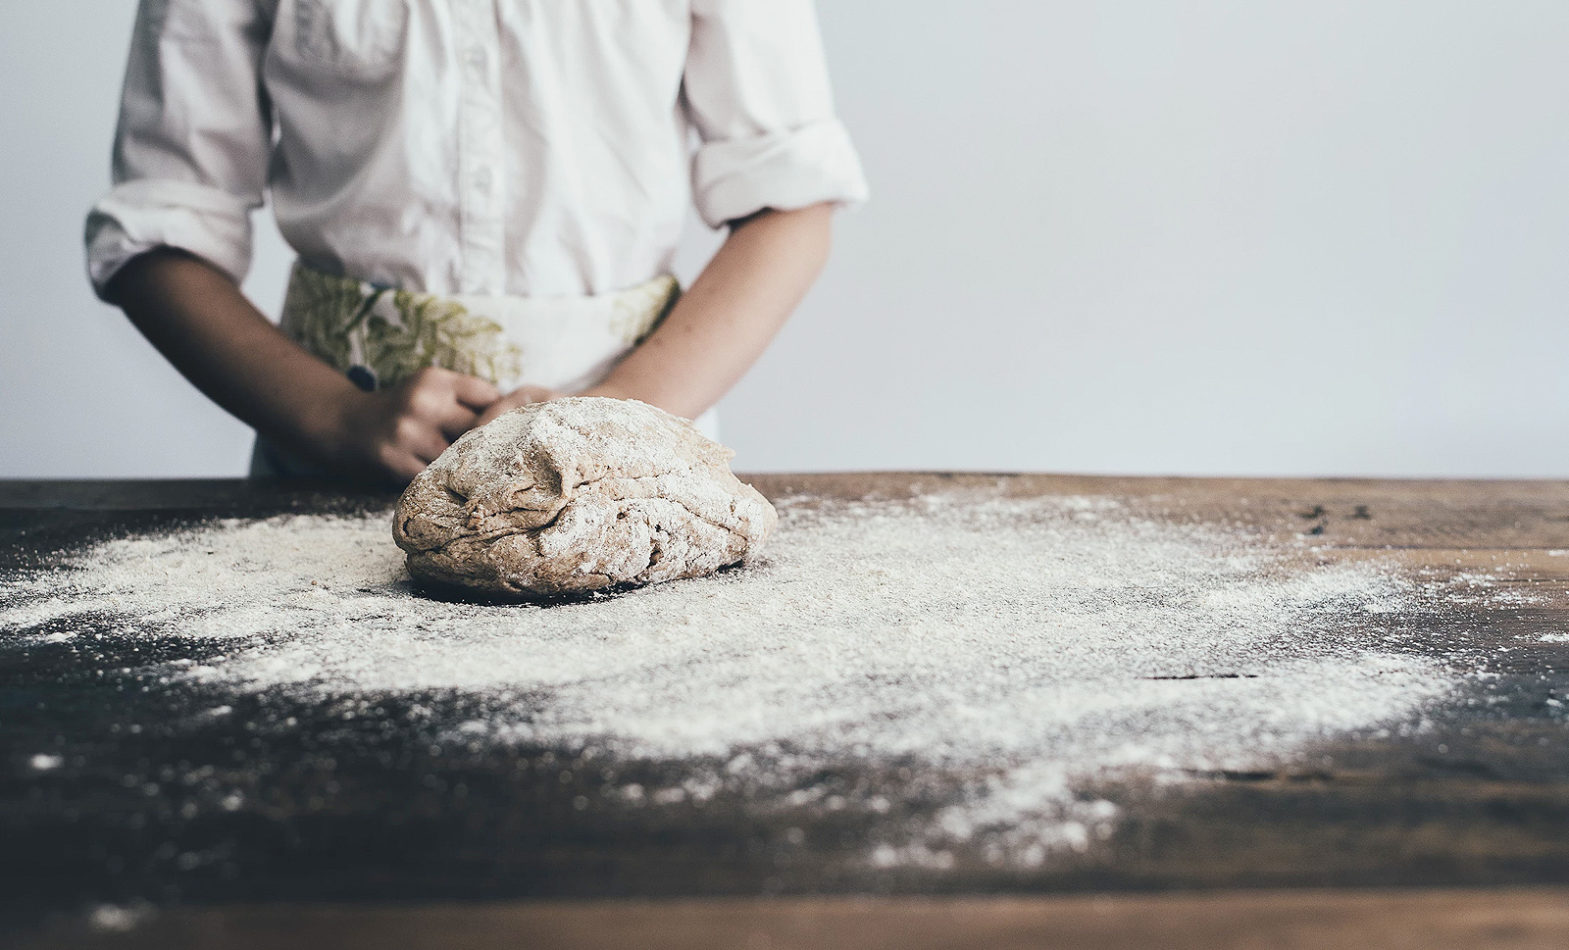 A dough for baking